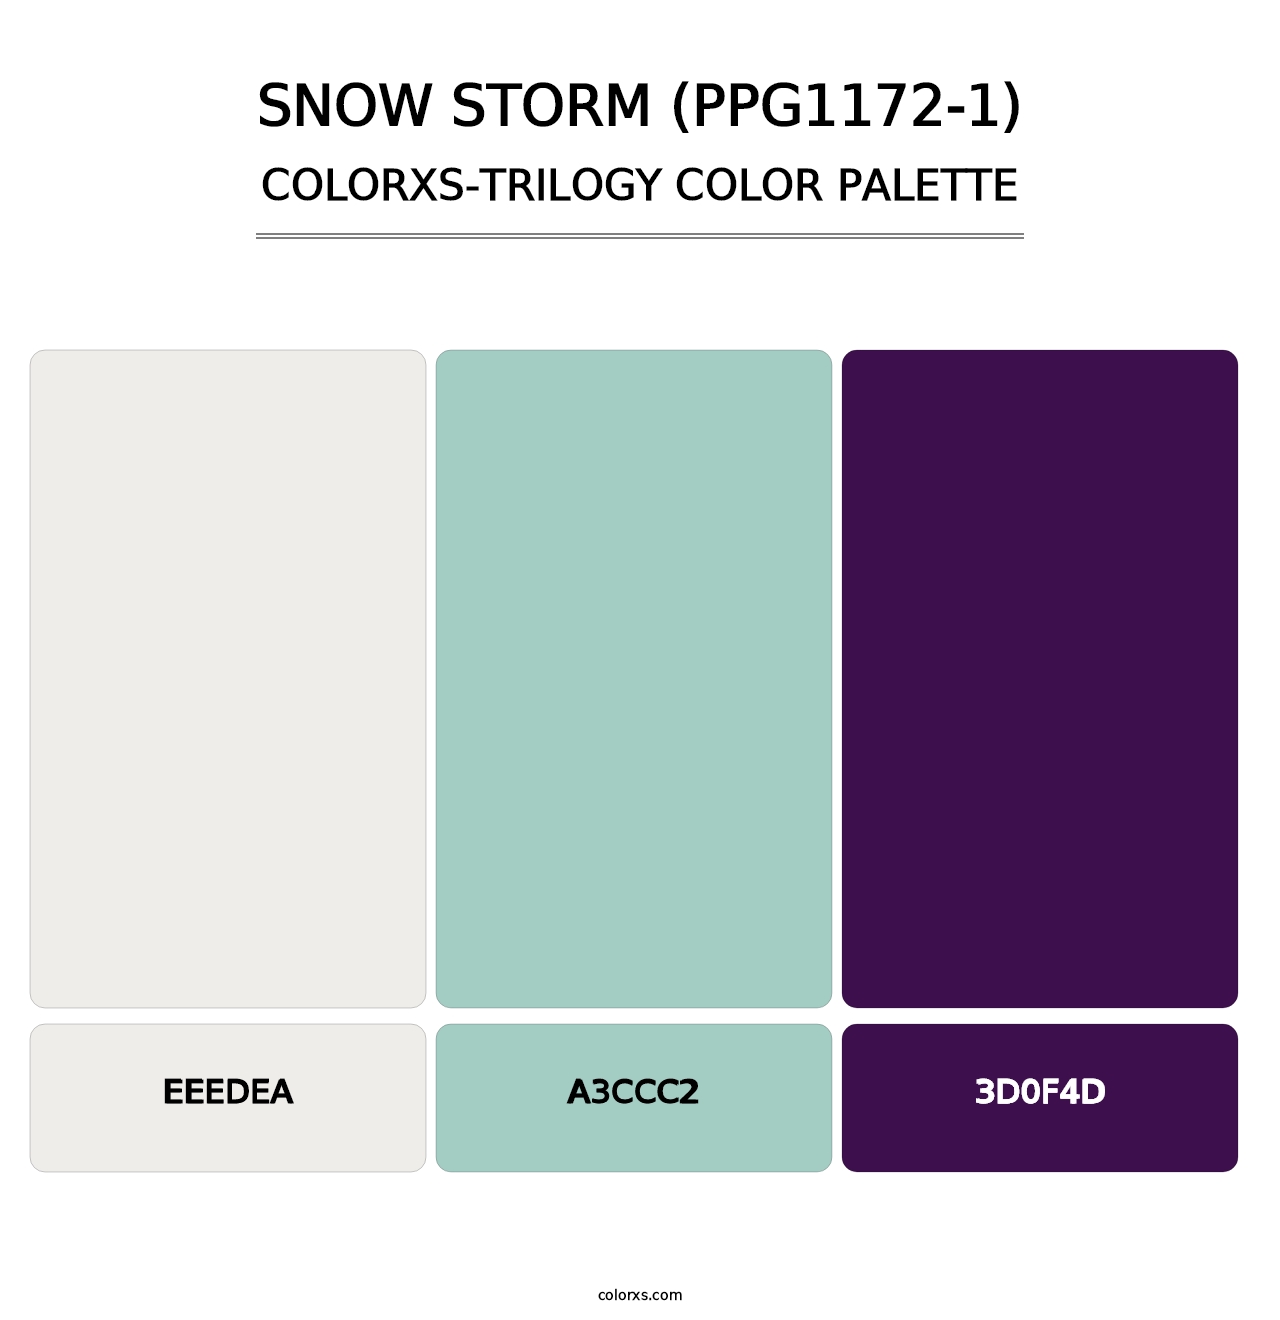 Snow Storm (PPG1172-1) - Colorxs Trilogy Palette